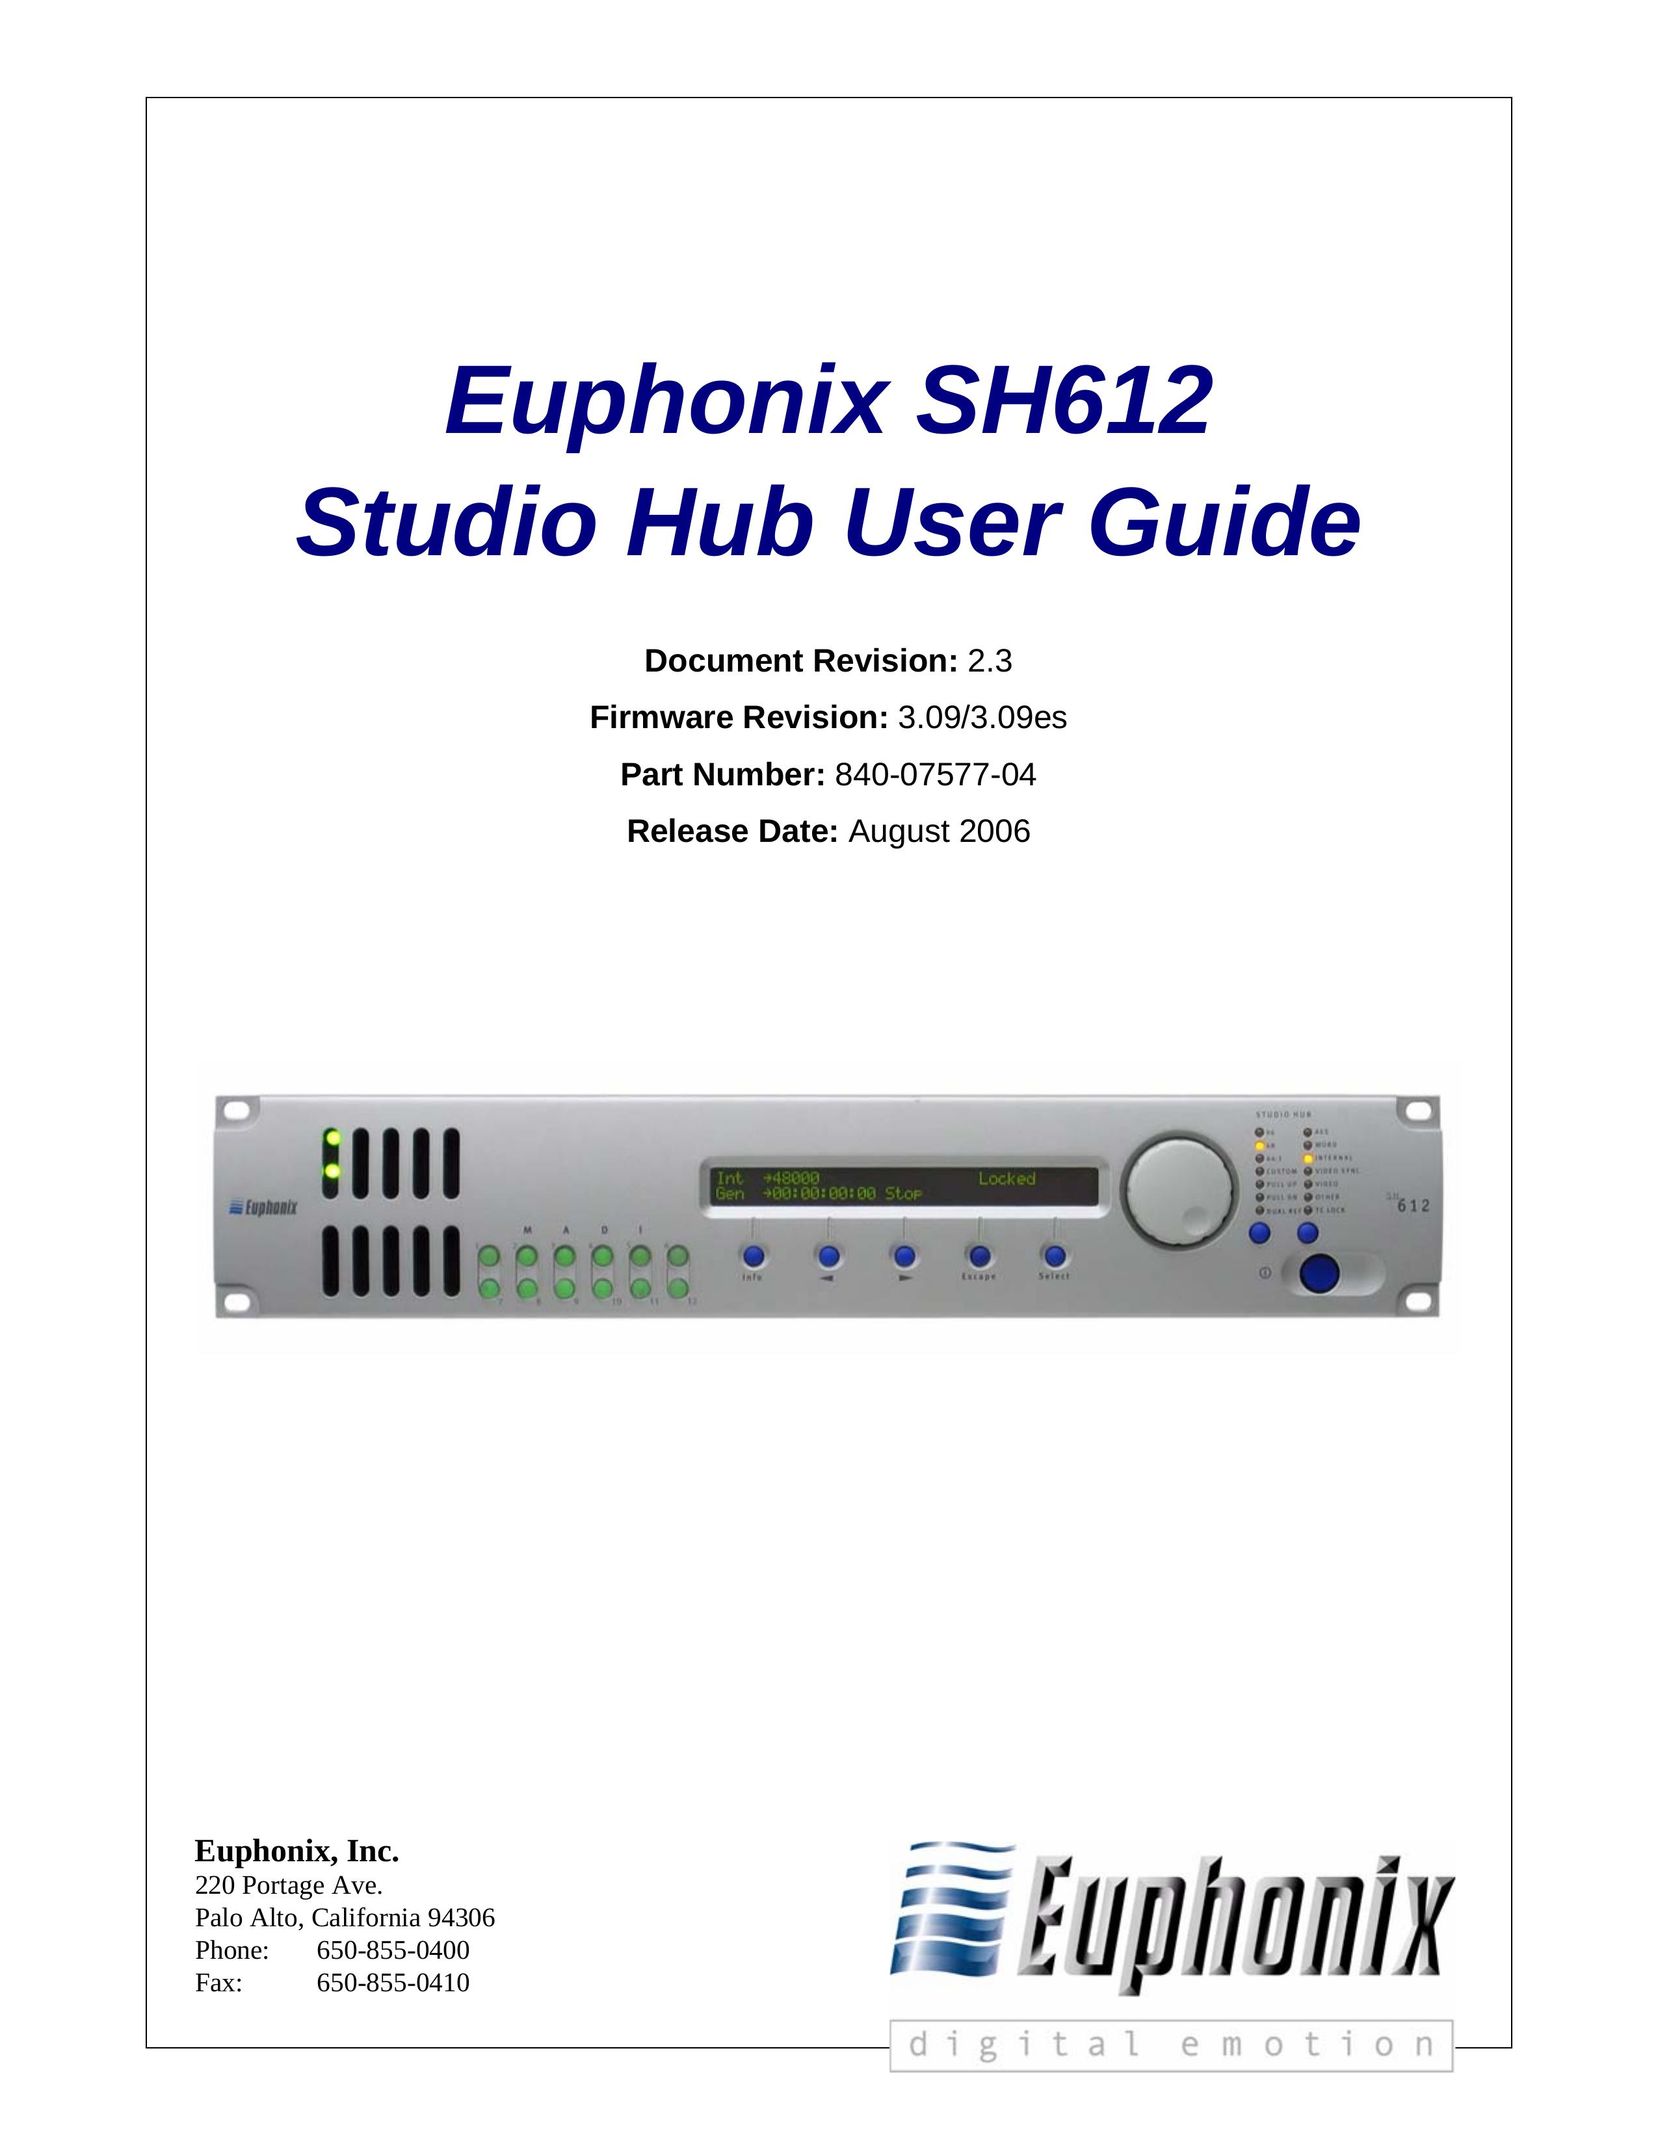 Euphonix SH612 Switch User Manual